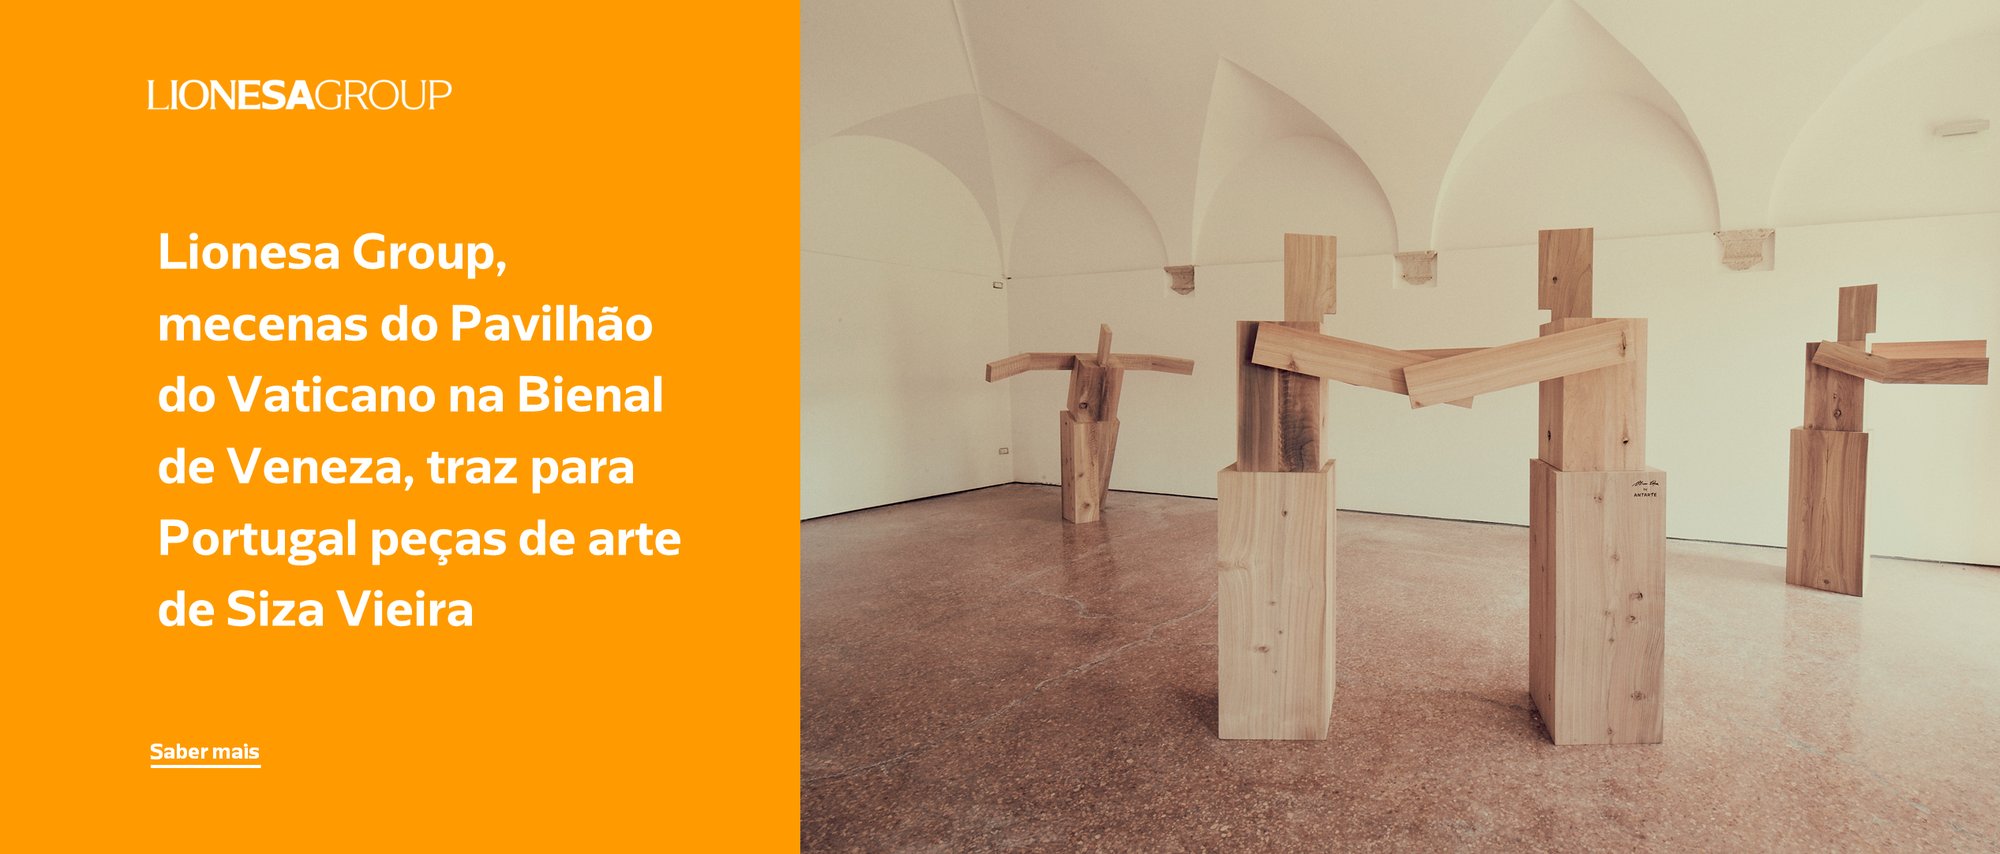 Lionesa Group, mecenas do Pavilhão do Vaticano na Bienal de Veneza, traz para Portugal peças de arte de Siza Vieira